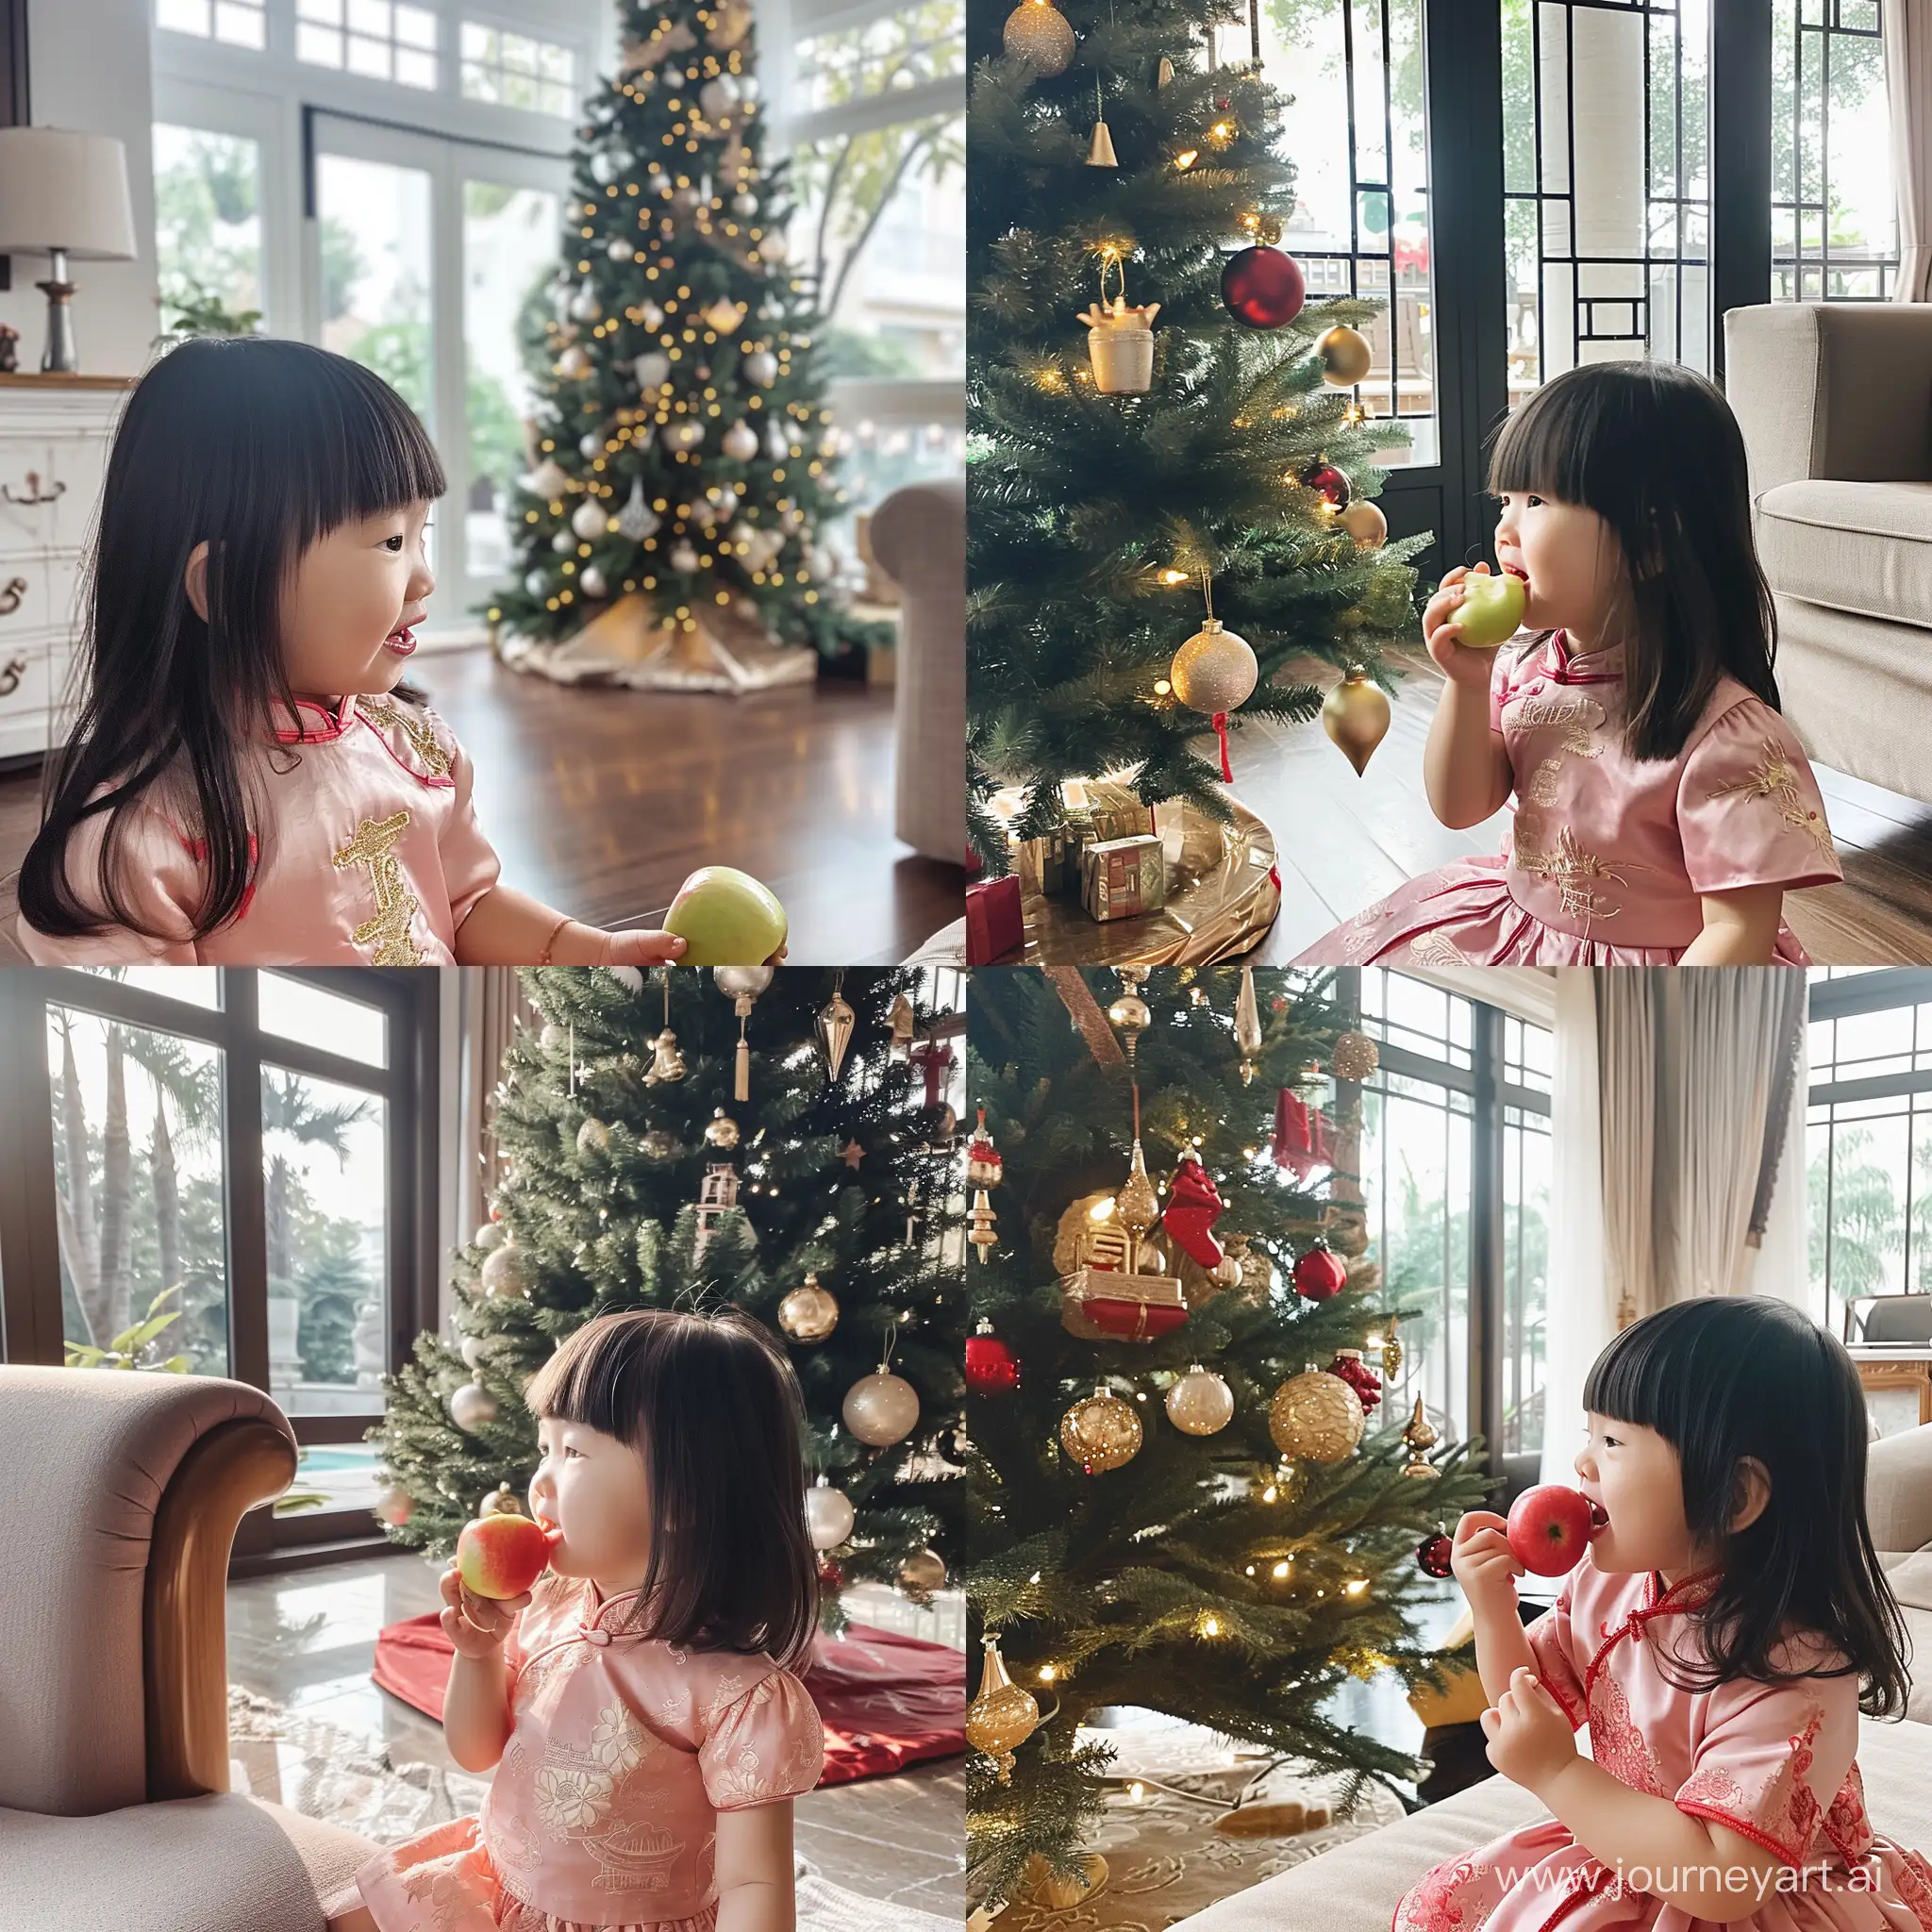 一个齐刘海头发长度到脖子的小女孩，穿着粉色中国风的套装裙，坐在一棵圣诞树旁，吃着苹果，幸福的看着圣诞树。这棵圣诞树在客厅的角落。客厅的装修奢华而低调，现代化的装修，大大的落地窗，光线充足，暖暖的阳光洒在小女孩的脸上。